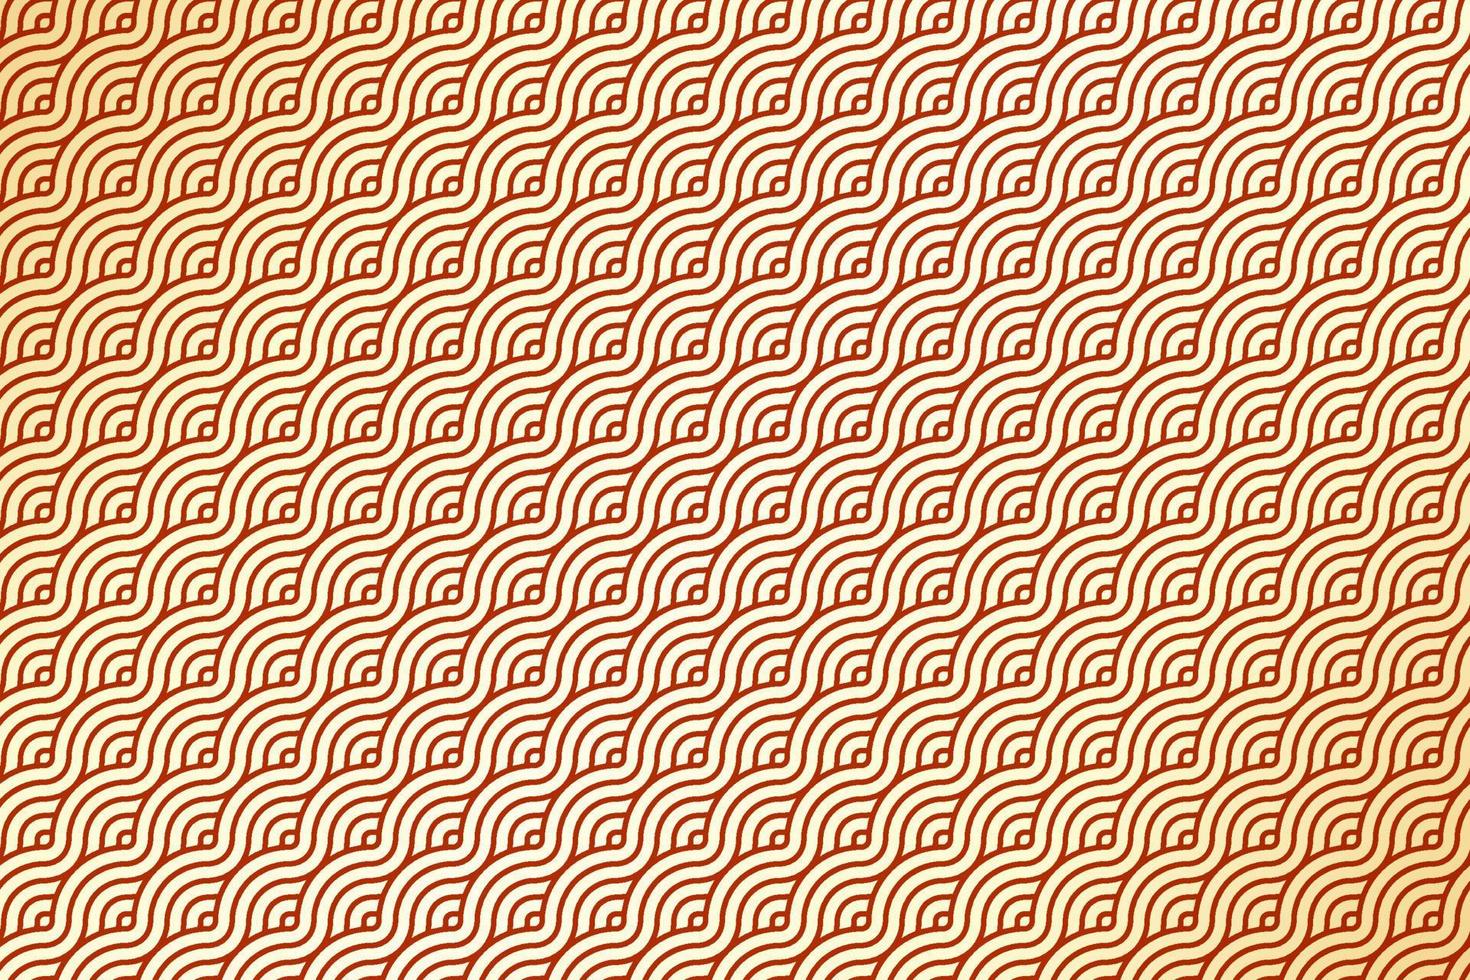 estilo de onda geométrica japonesa ou chinesa diagonal. padrão de forma de linha ondulada círculo sobreposto abstrato com fundo de cor gradiente vermelho e dourado de luxo. vetor